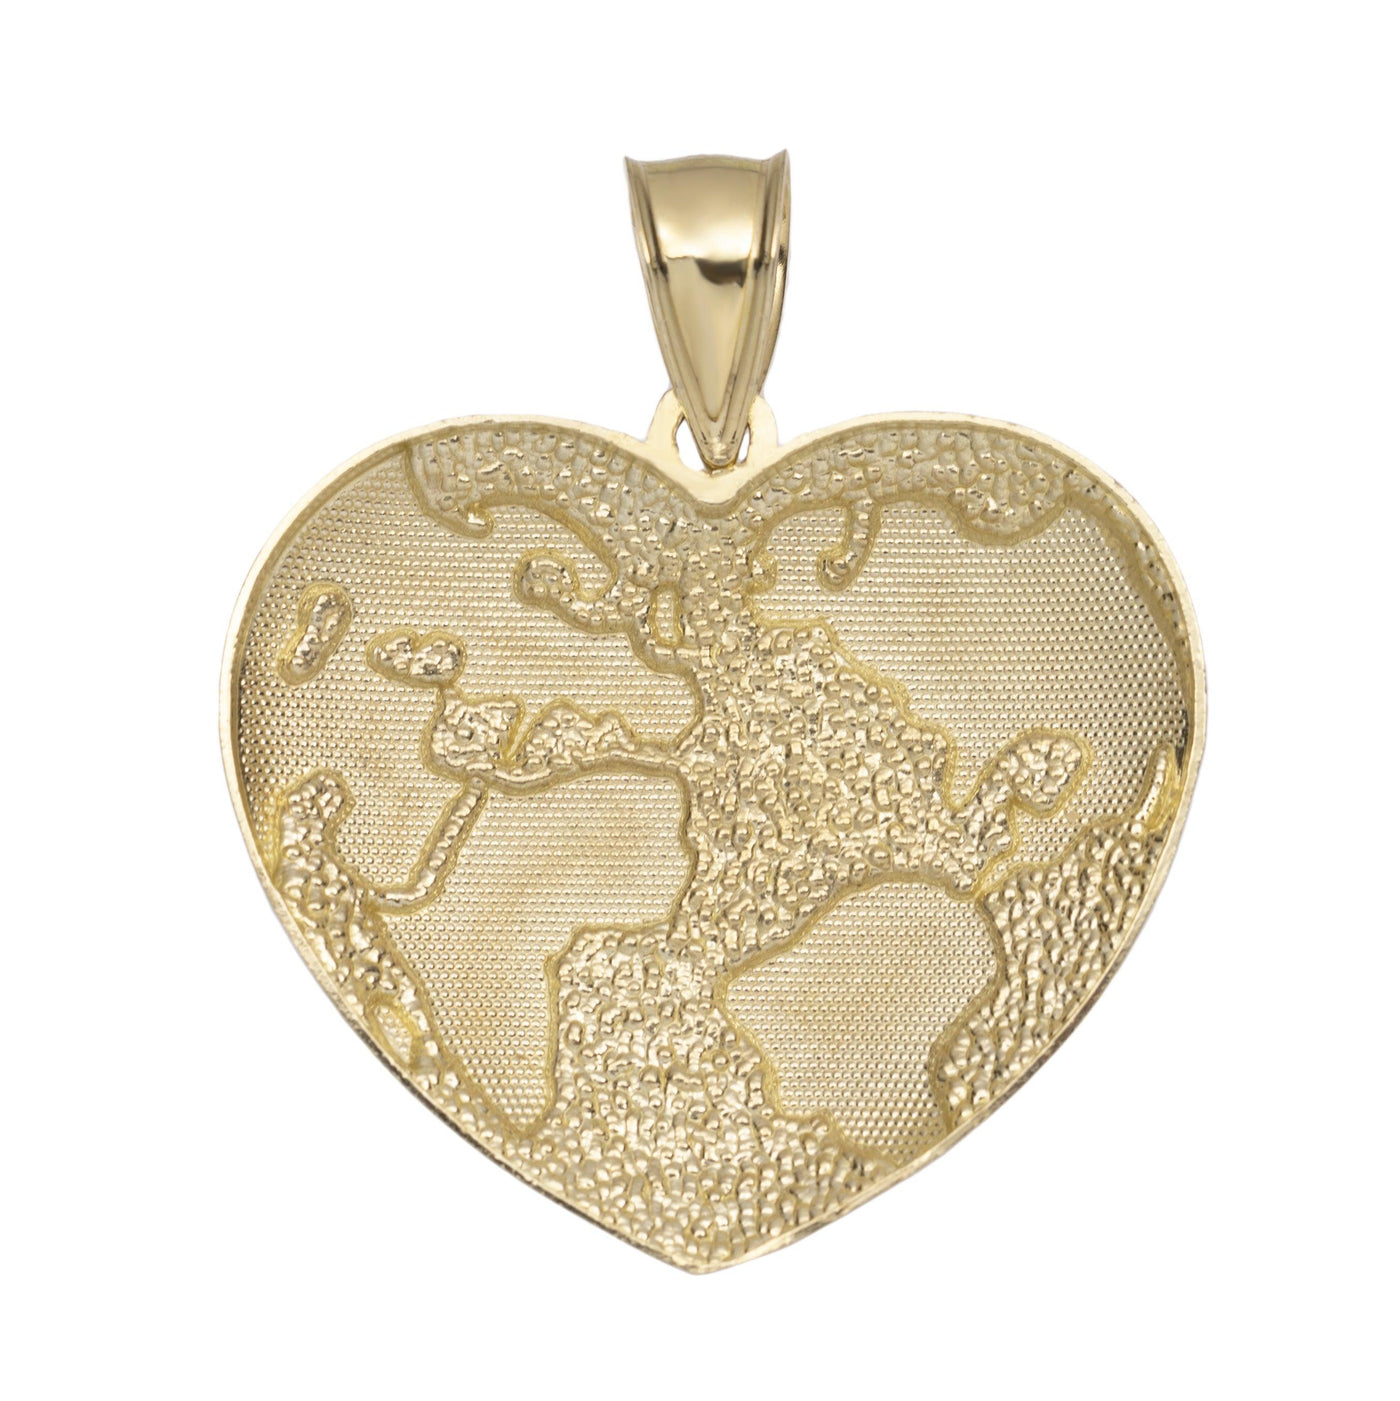 Heart Shaped World Map Pendant 10K Yellow Gold - bayamjewelry